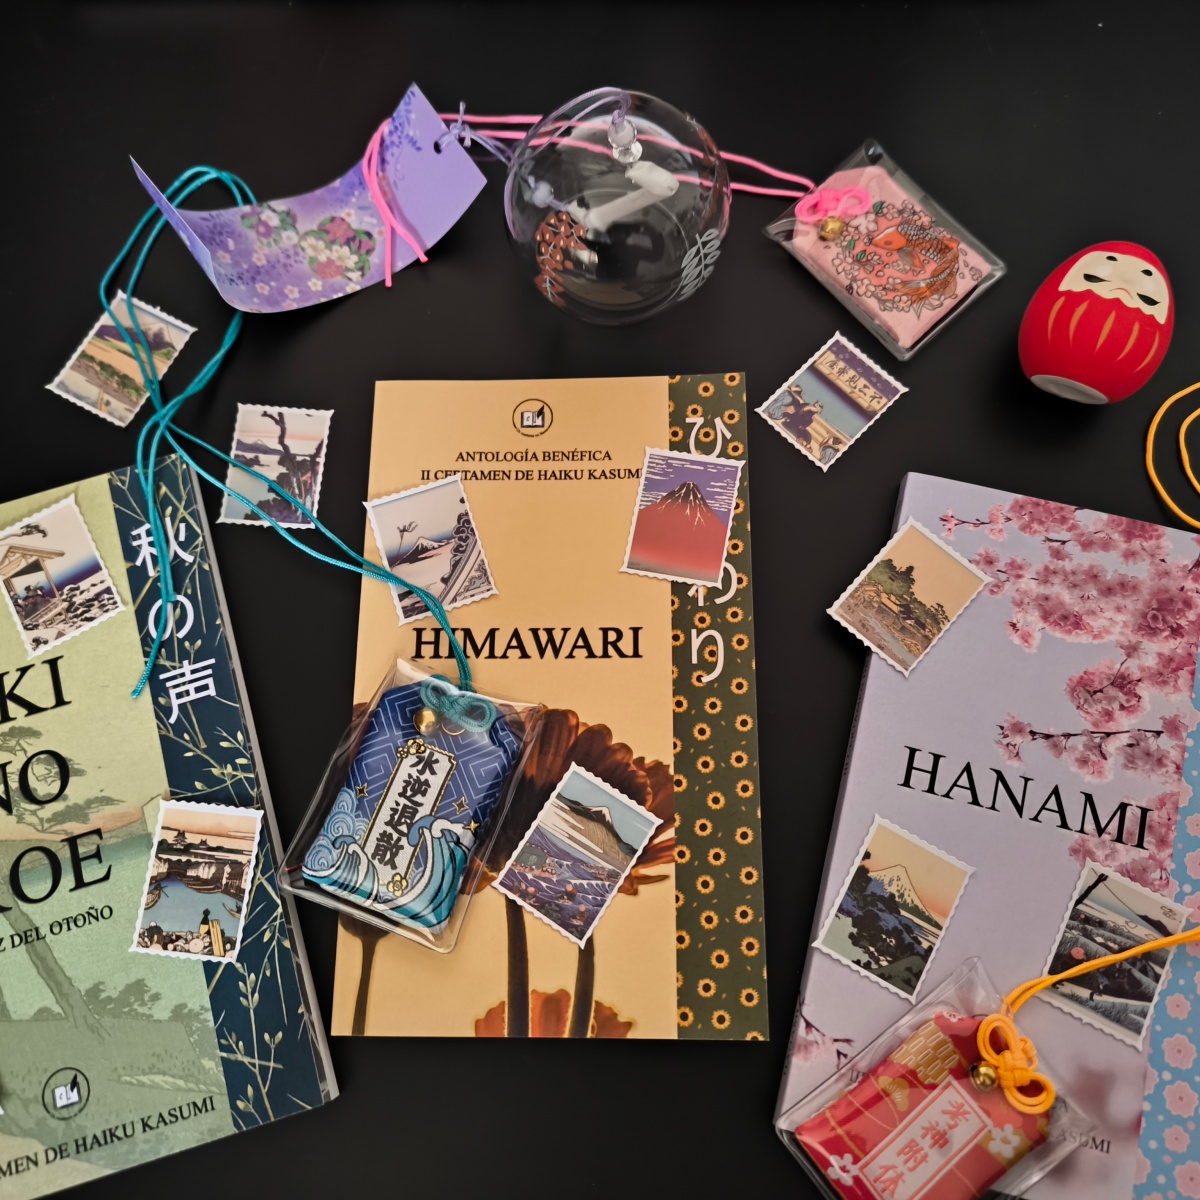 Comenzamos a preparar los packs de regalo que acompañarán a los premios del IV Certamen de haiku Kasumi